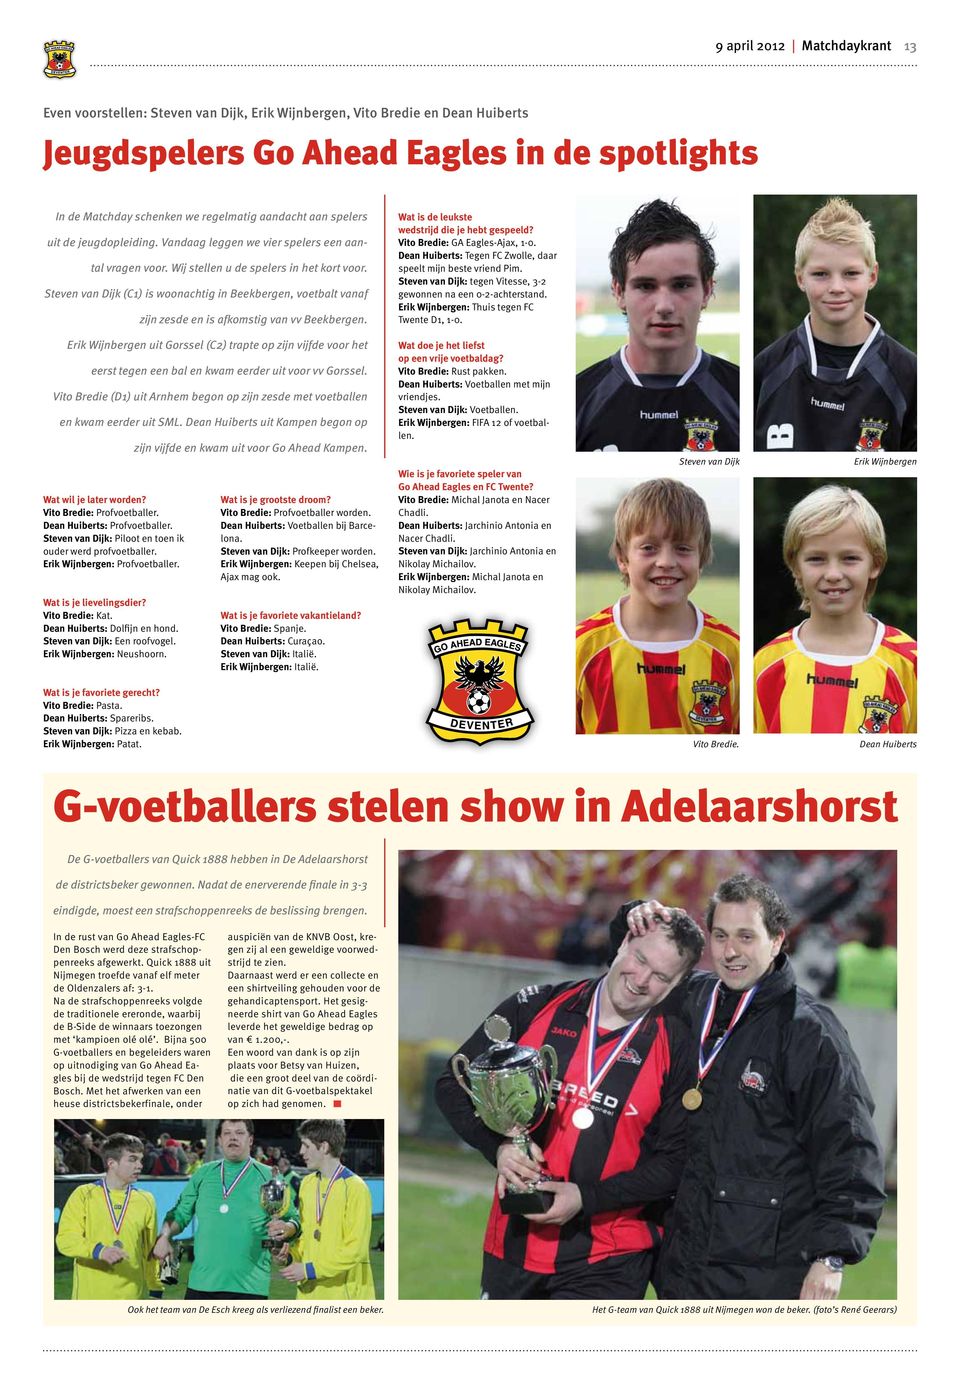 Steven van Dijk (C1) is woonachtig in Beekbergen, voetbalt vanaf zijn zesde en is afkomstig van vv Beekbergen. Wat is de leukste wedstrijd die je hebt gespeeld? Vito Bredie: GA Eagles-Ajax, 1-0.